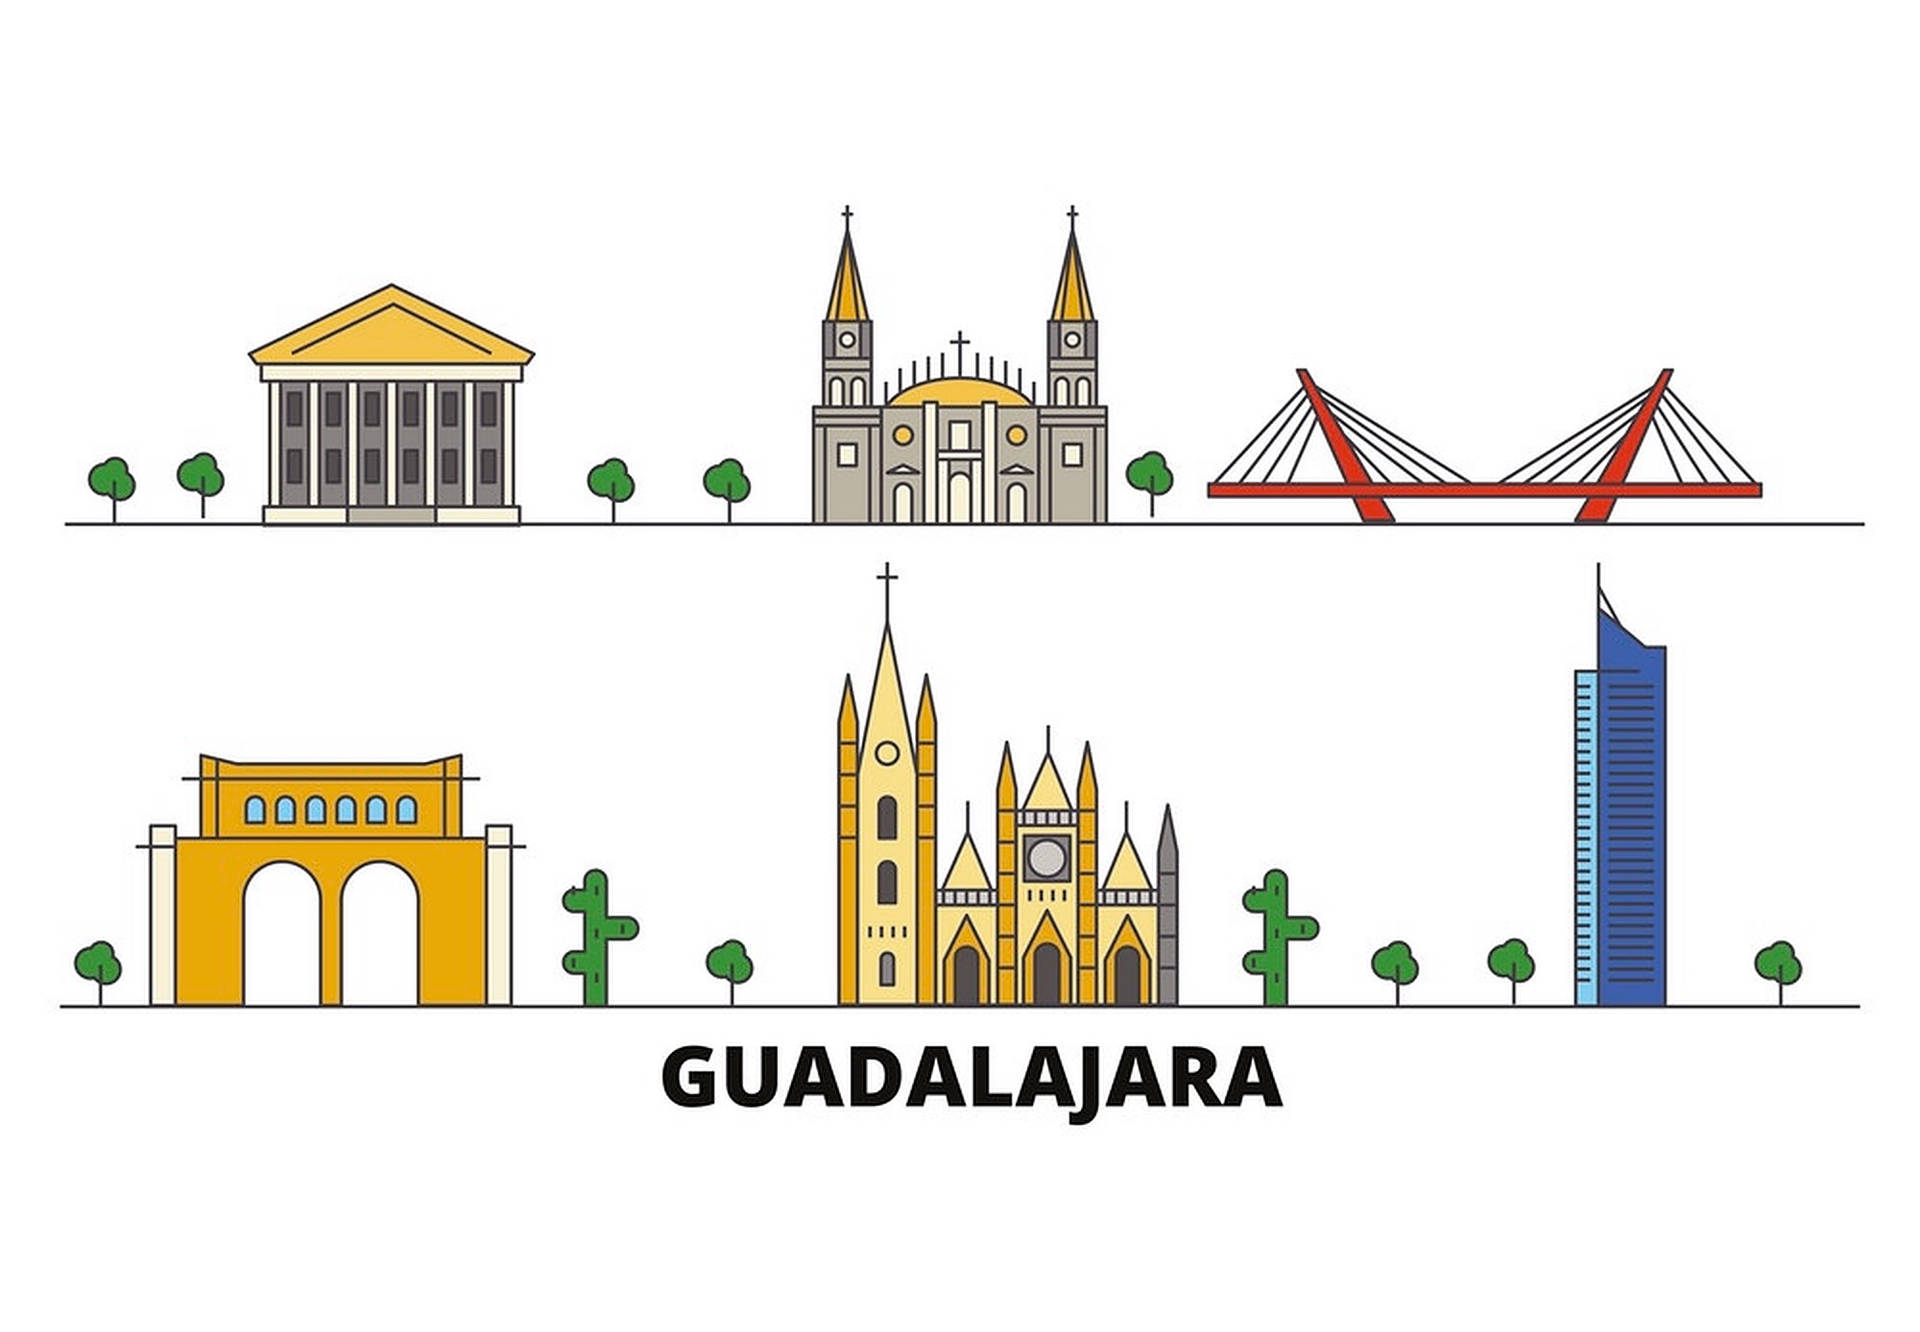 Guadalajara graphic art wallpaper